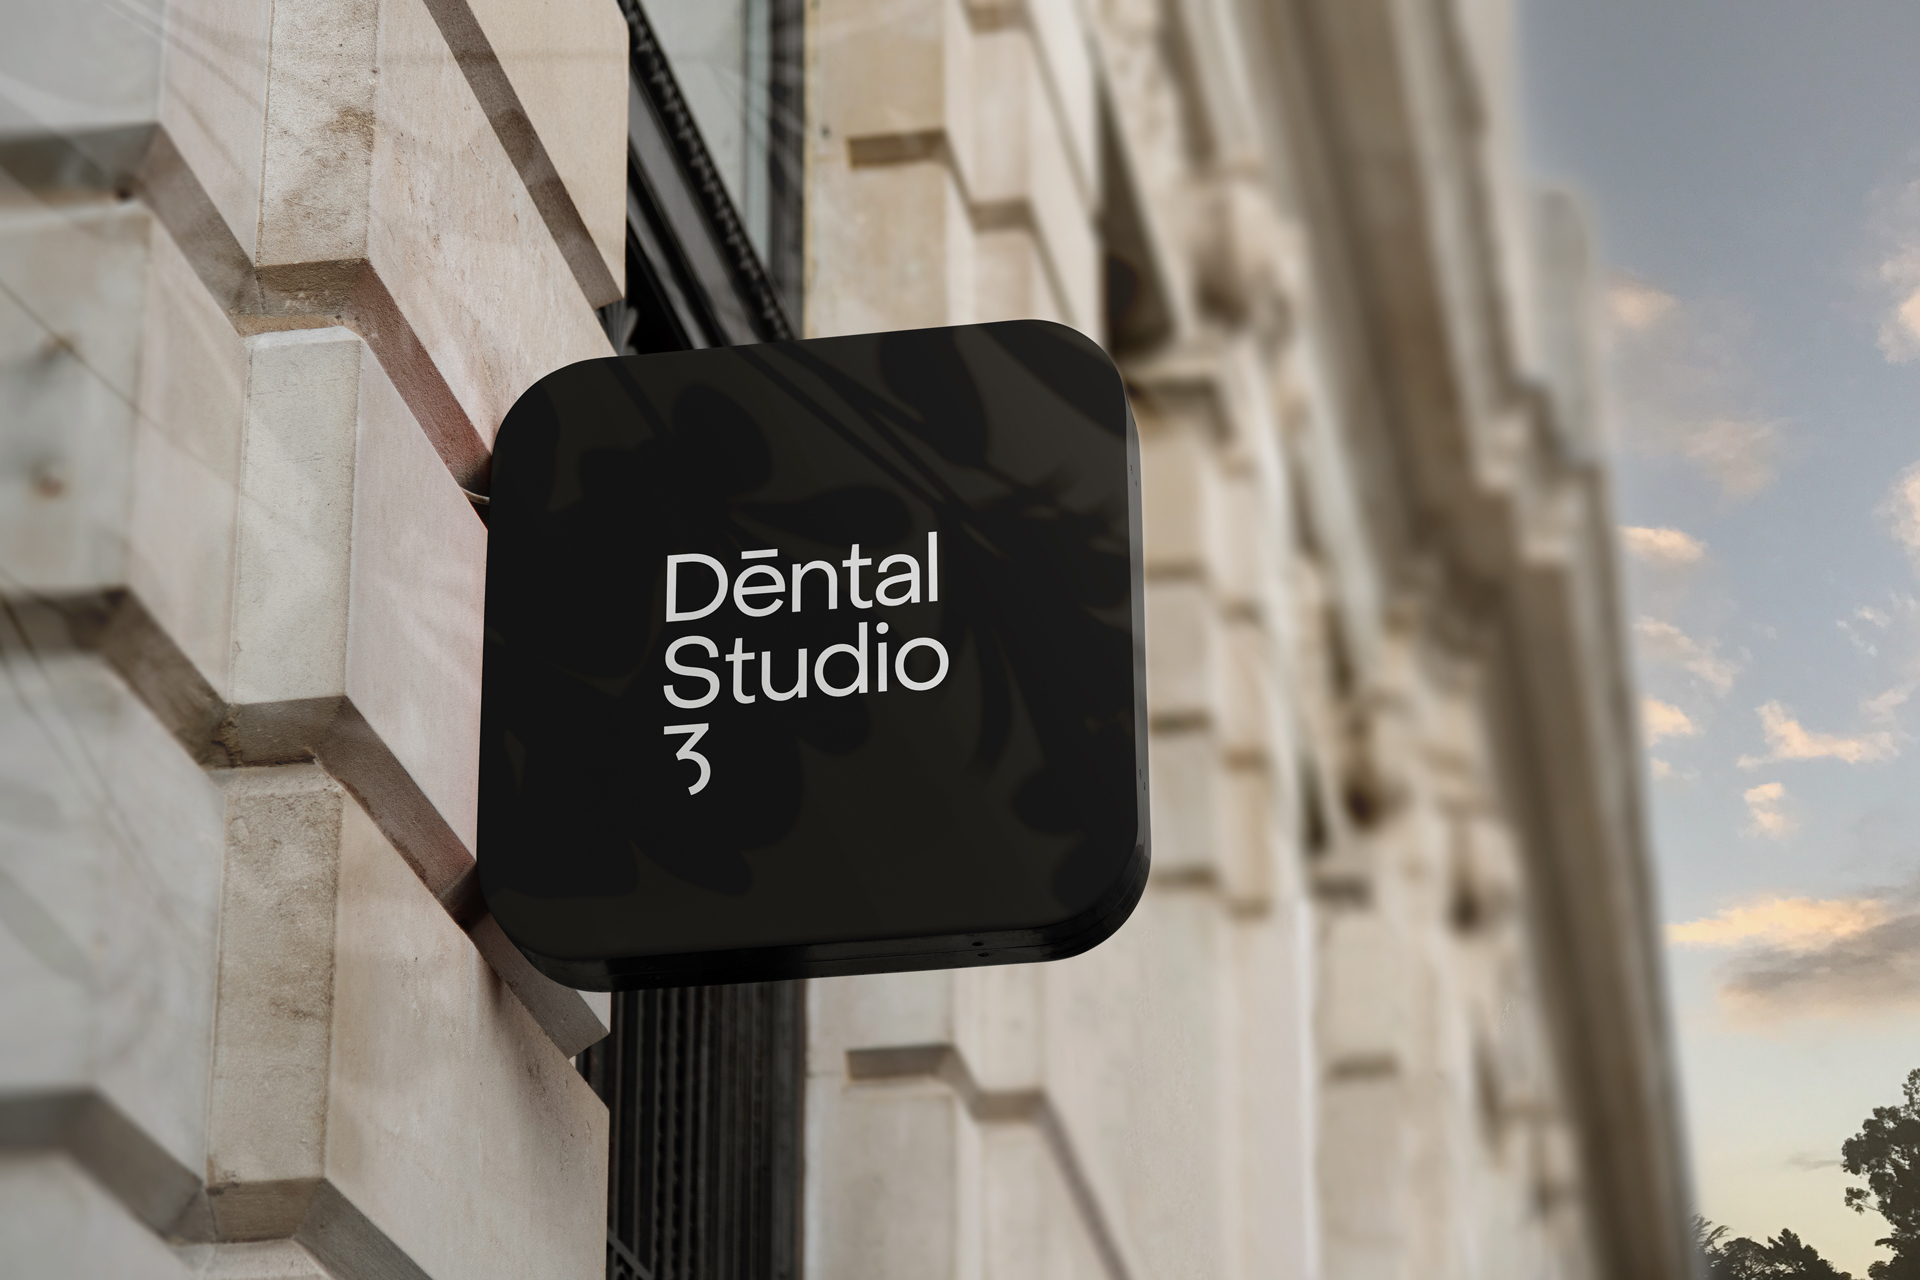 Dental Studio 3 – Dental office from Belgrade, Serbia